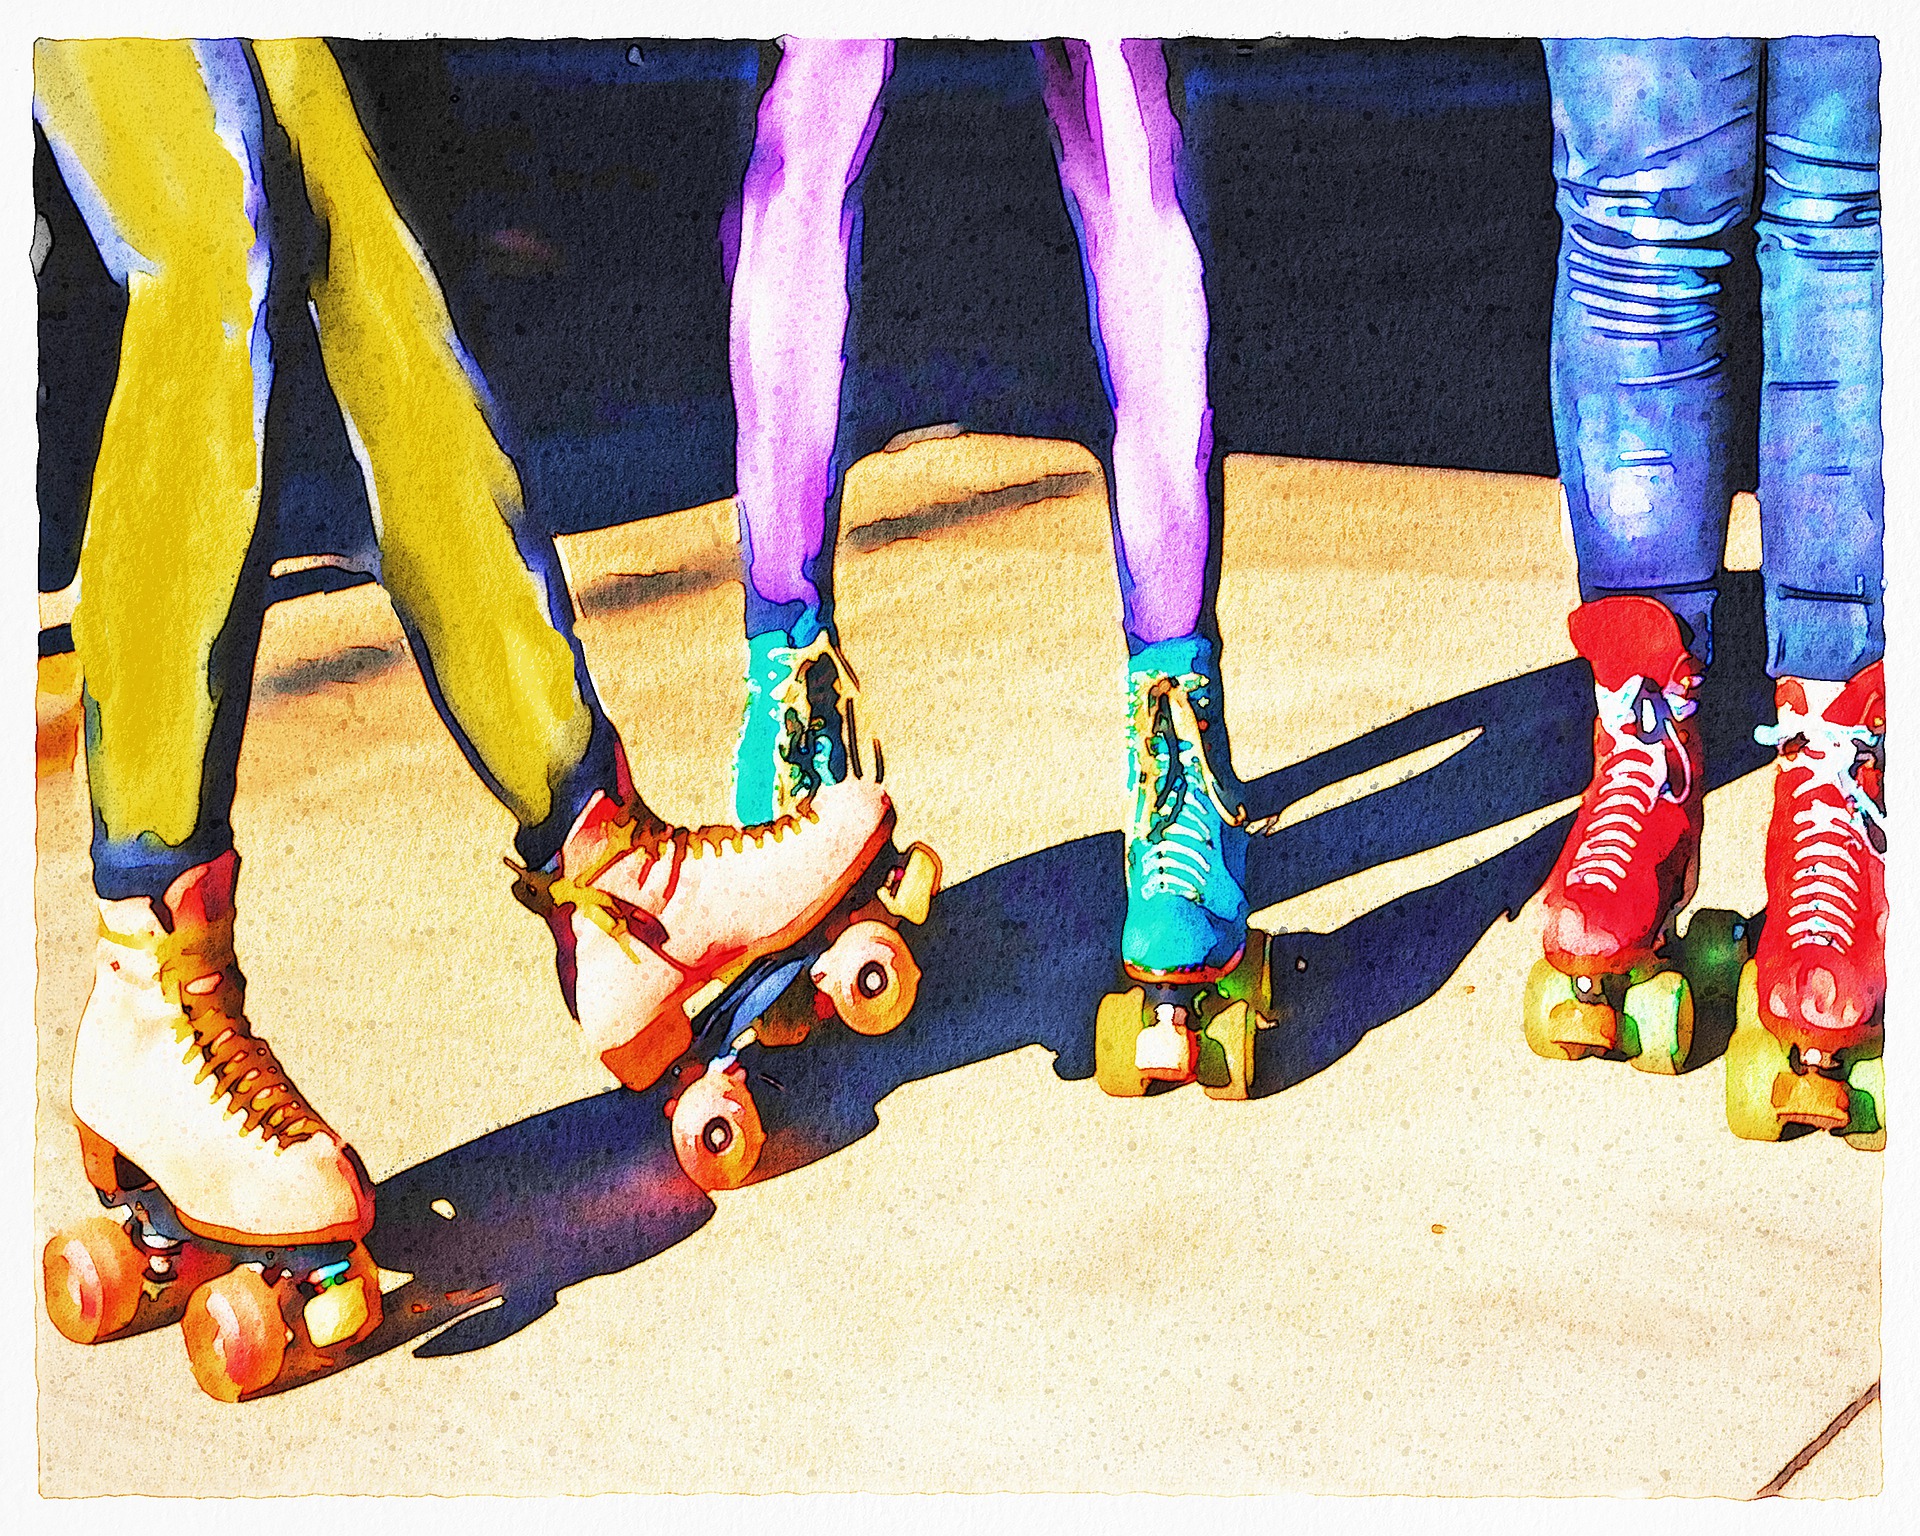 3 pairs of legs wearing roller skates